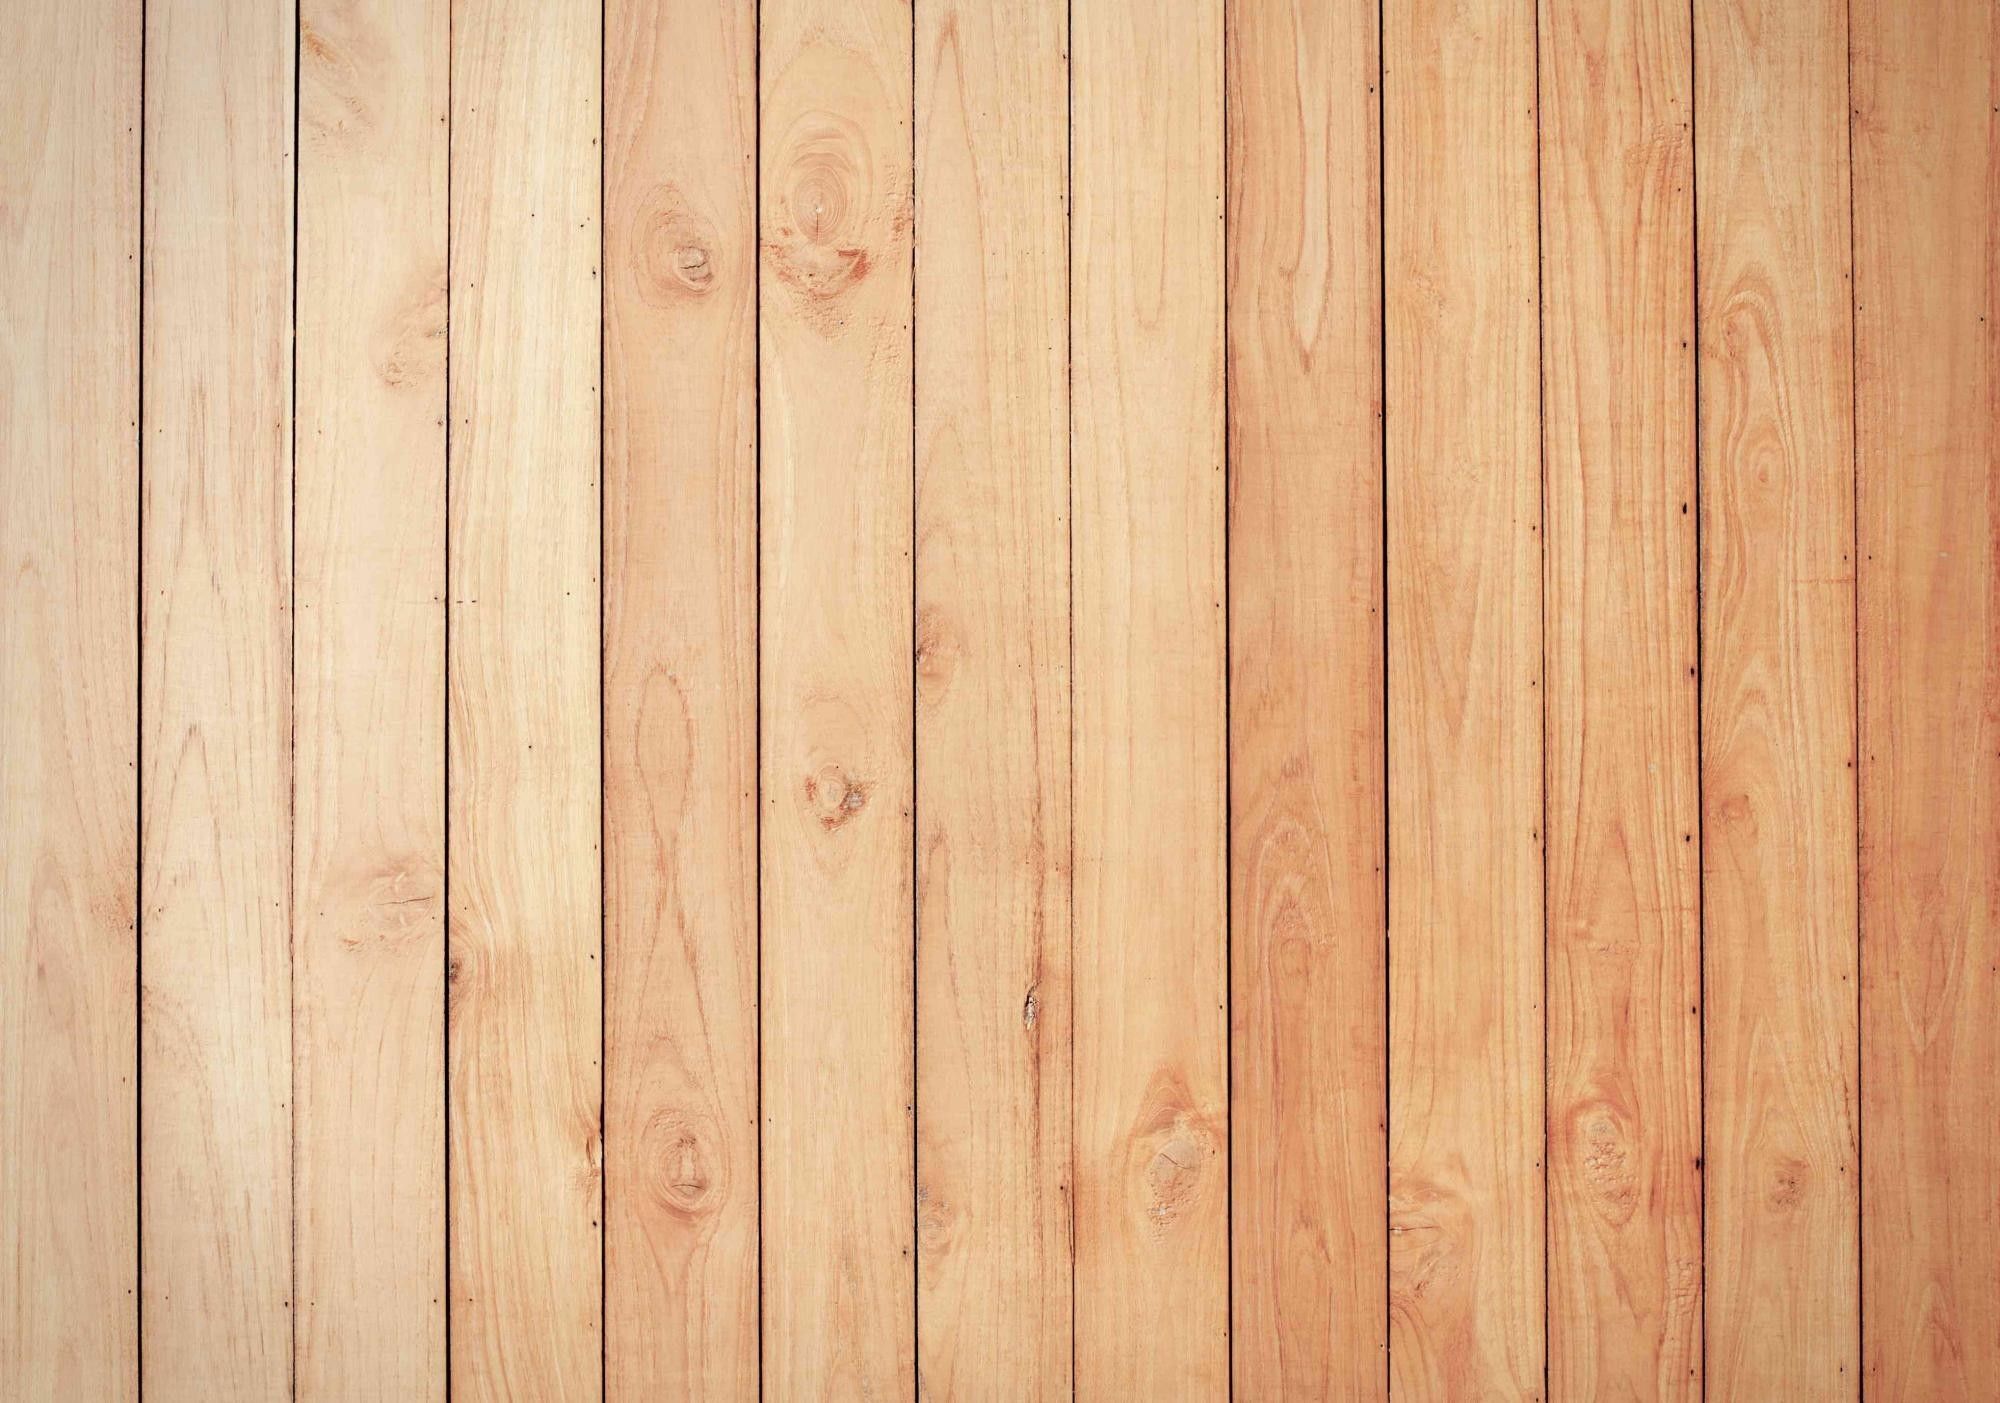 Hình nền gỗ: Khám phá bộ sưu tập hình nền gỗ đa dạng và đẹp mắt để tạo không gian làm việc hoàn hảo cho bạn. Những hình ảnh gỗ tự nhiên đem lại cảm giác mộc mạc, gần gũi với thiên nhiên. Người dùng sẽ không muốn bỏ qua cơ hội xem những hình nền gỗ đẹp như vậy.